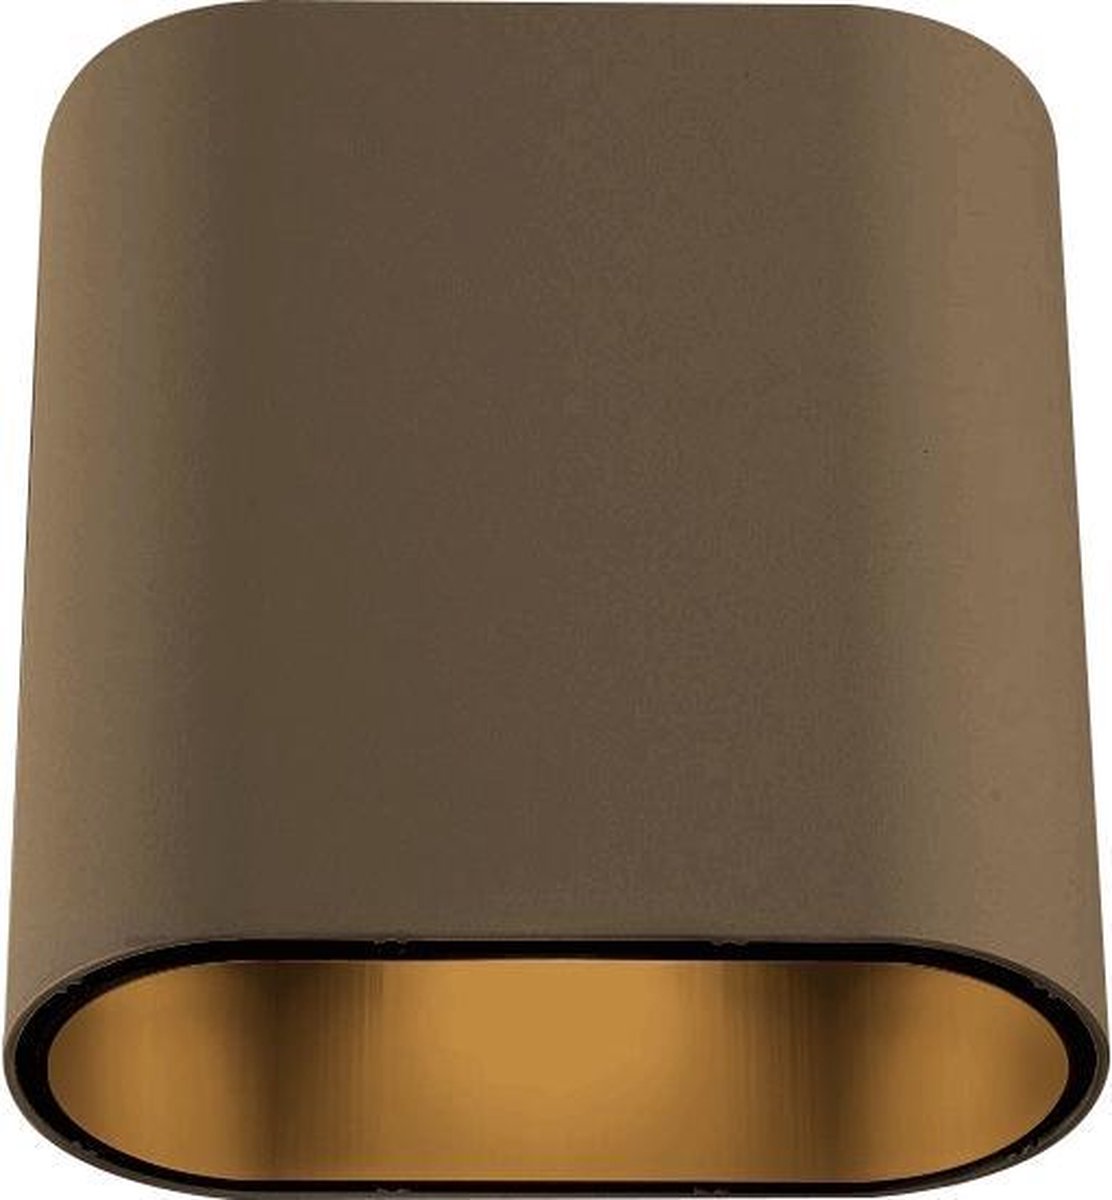 lager het internet Bevoorrecht Modular Duell Wall LED (500lm) wandlamp brons/zwart | bol.com